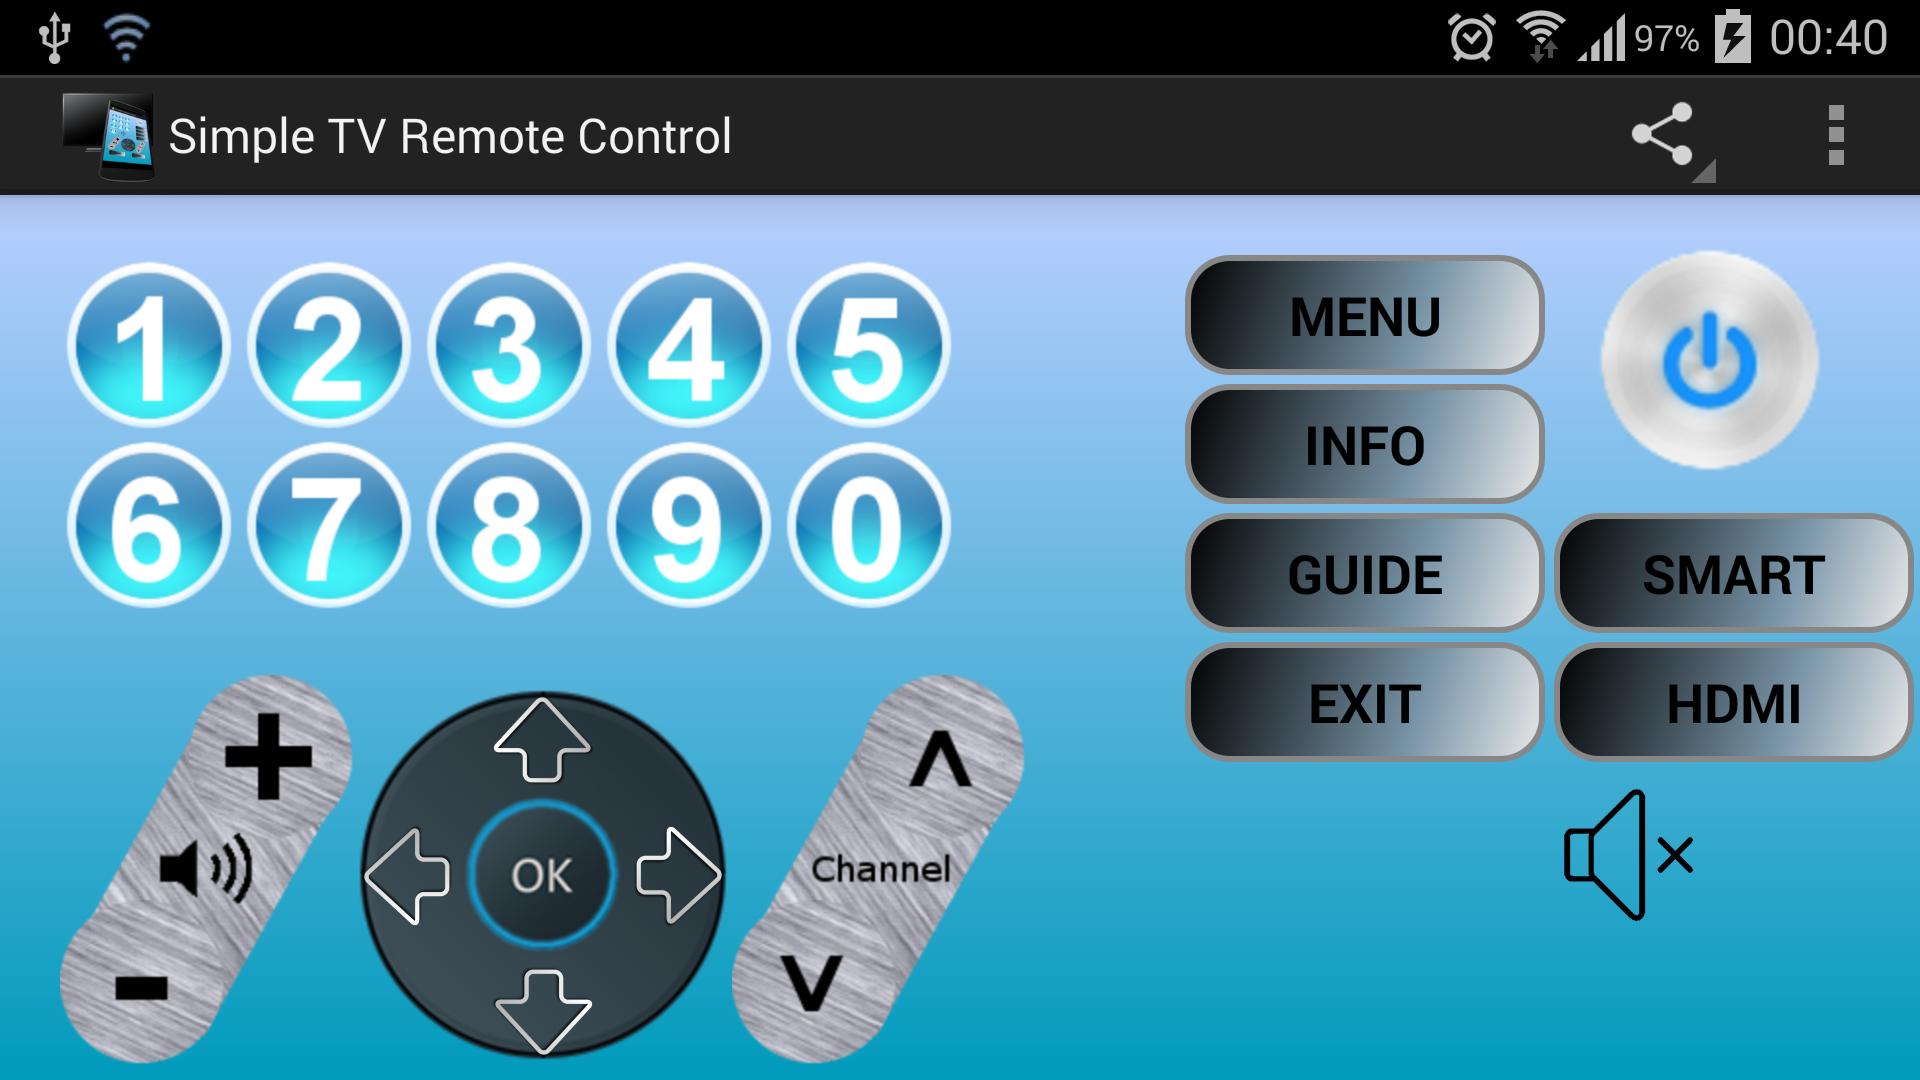 Tv remote service. TV Remote Control приложение. Simple small Remote Control. Android TV Remote Control from PC. Remote Control caption.